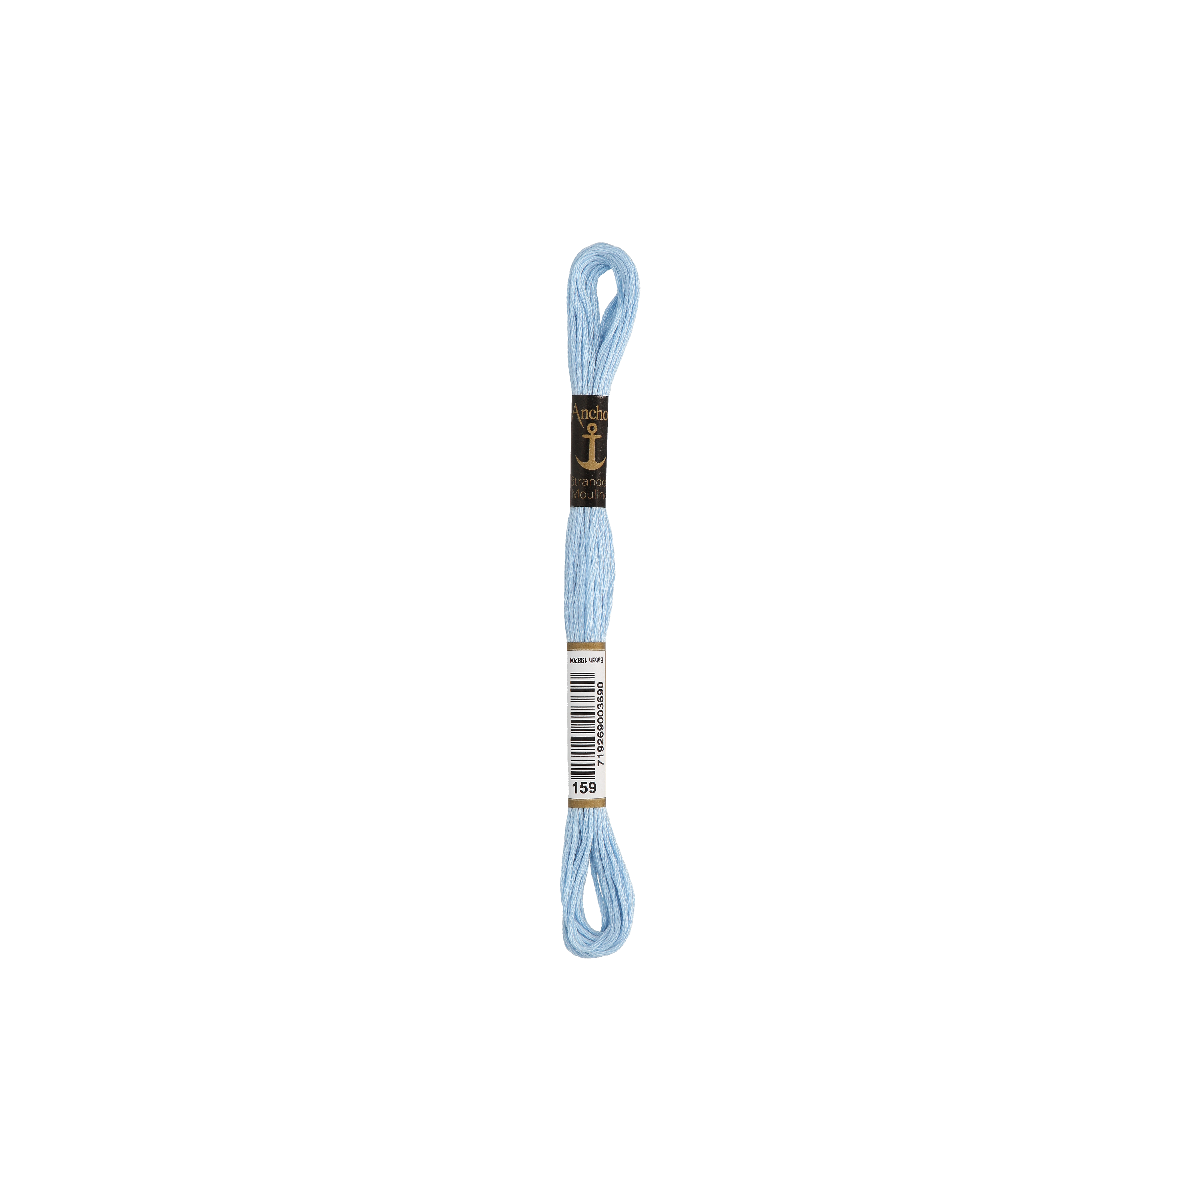 Anchor Sticktwist 8m, blu chiaro, cotone, colore 159, 6 fili